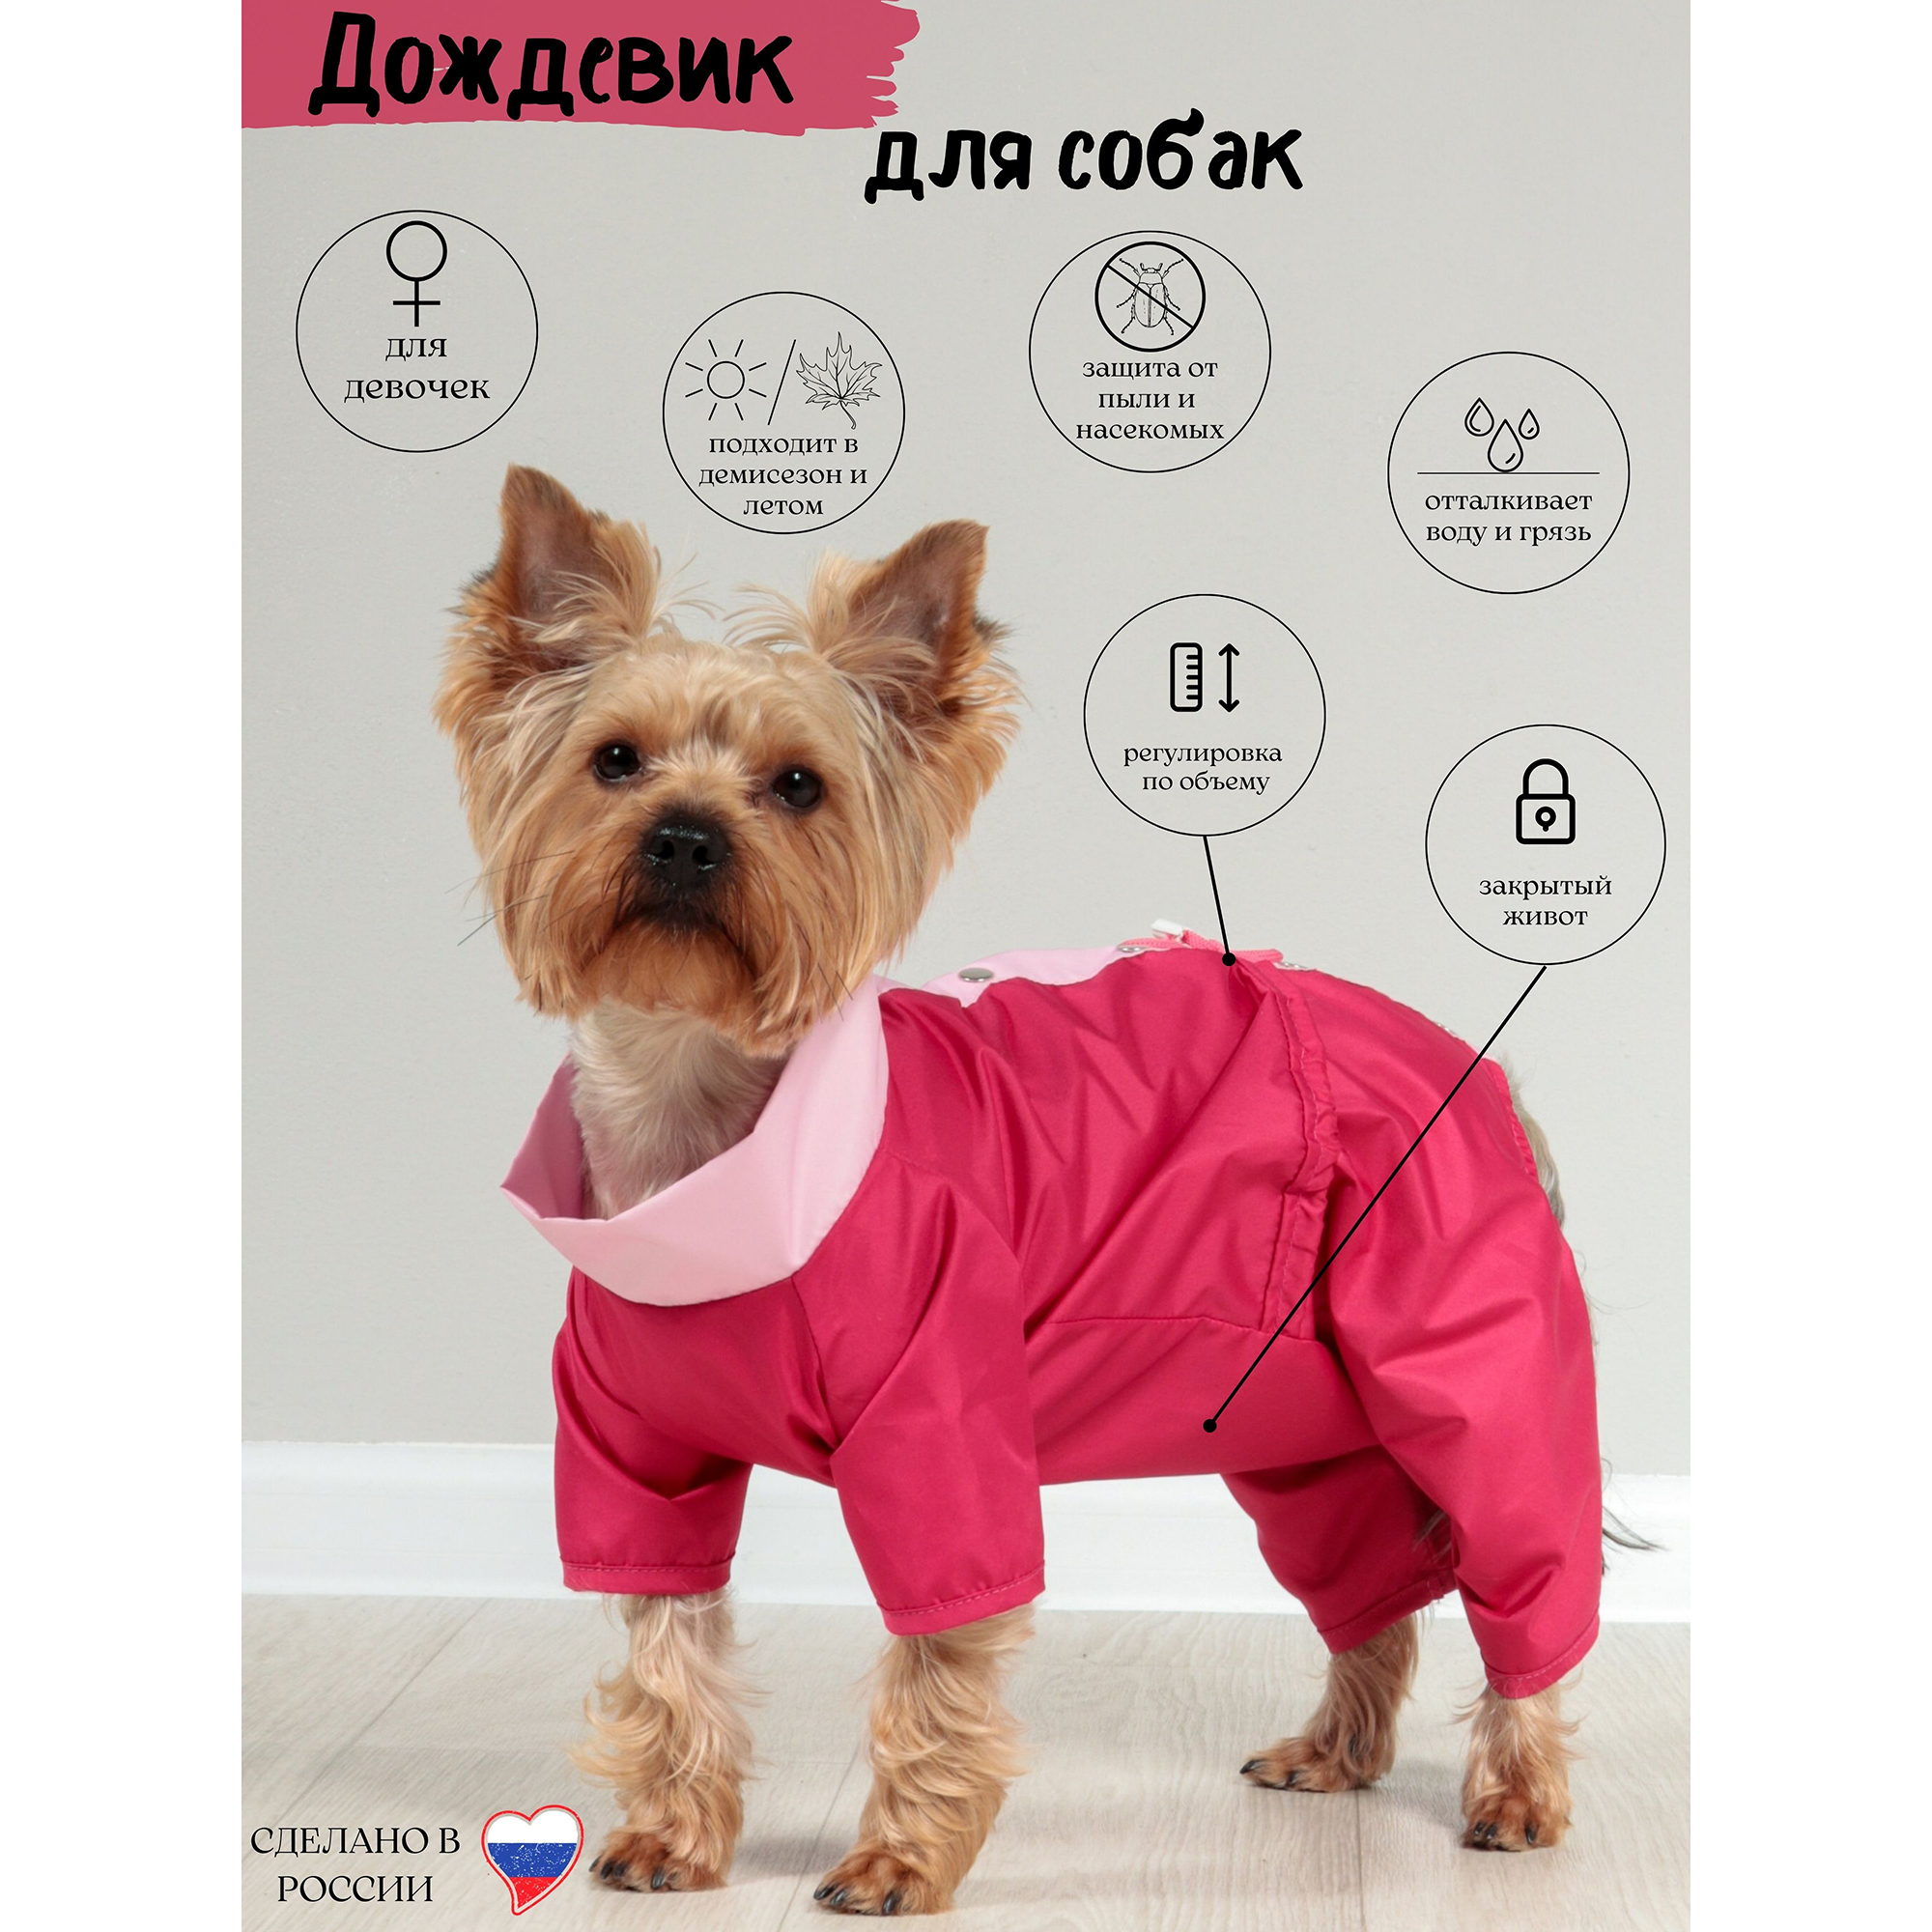 Дождевик для собак Yoriki Малина, женский, розовый, полиэстер, размер М, 24 см